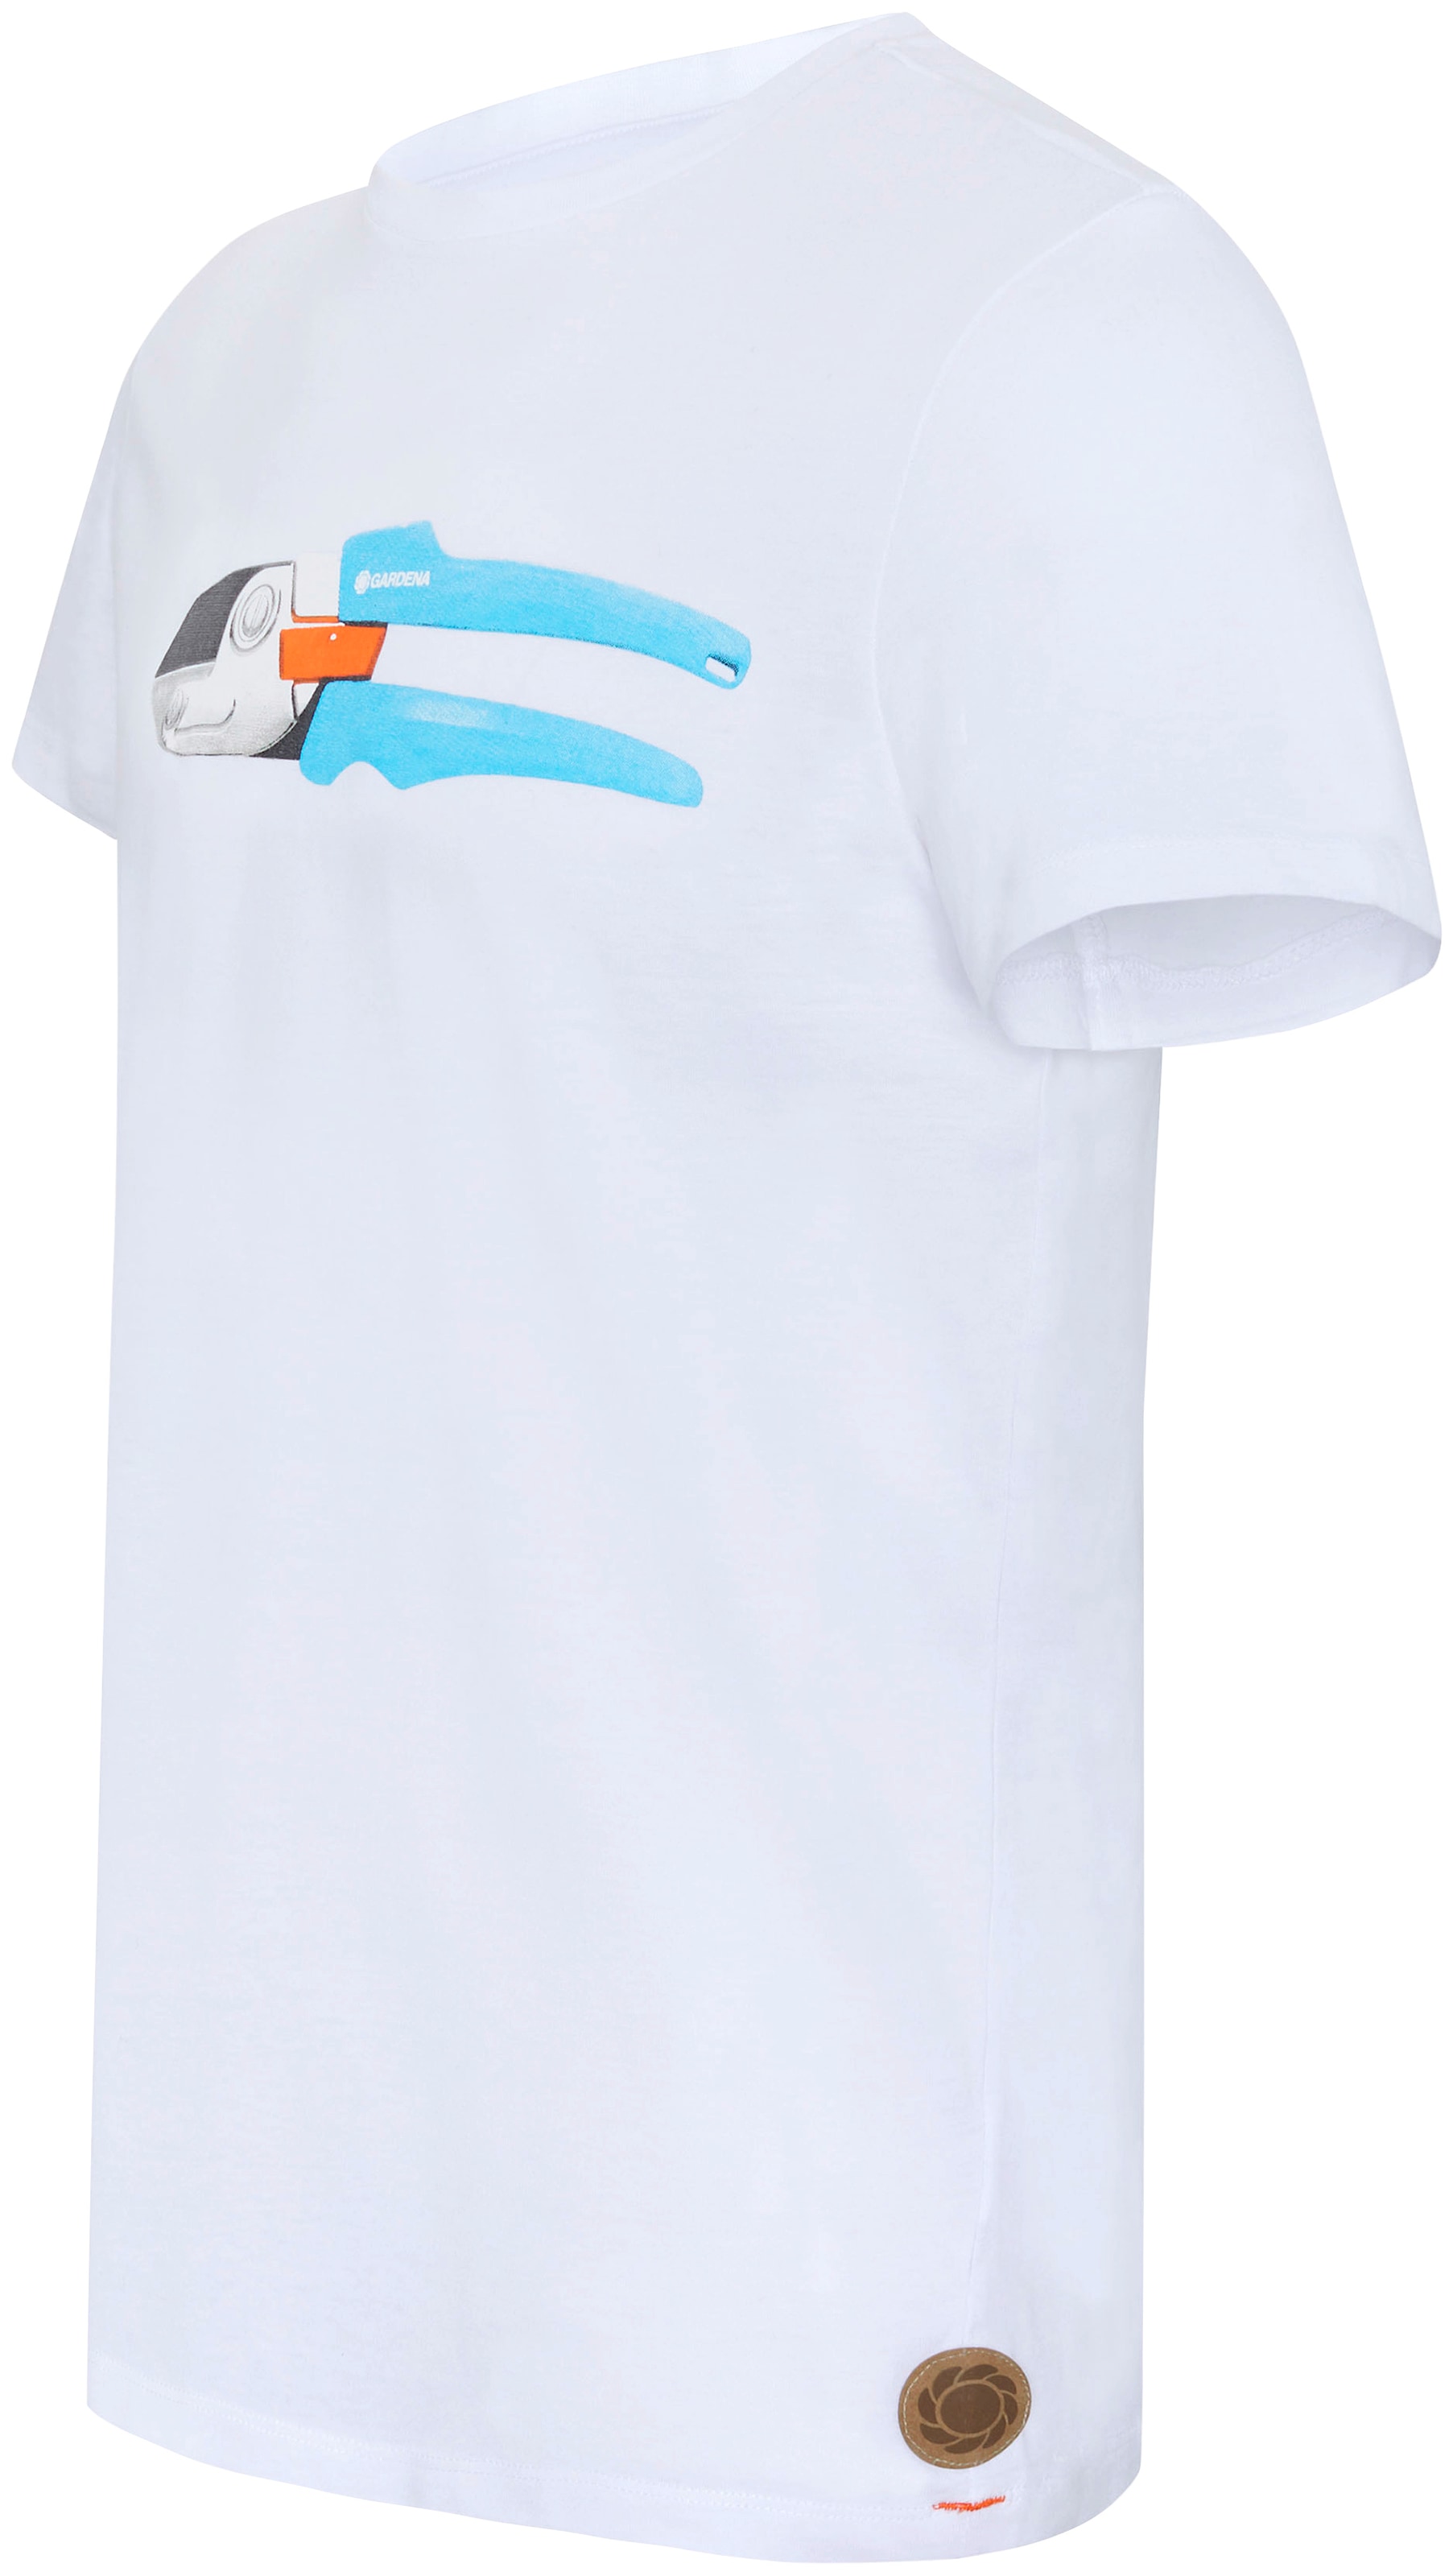 »Bright T-Shirt Aufdruck mit ♕ GARDENA bei White«,